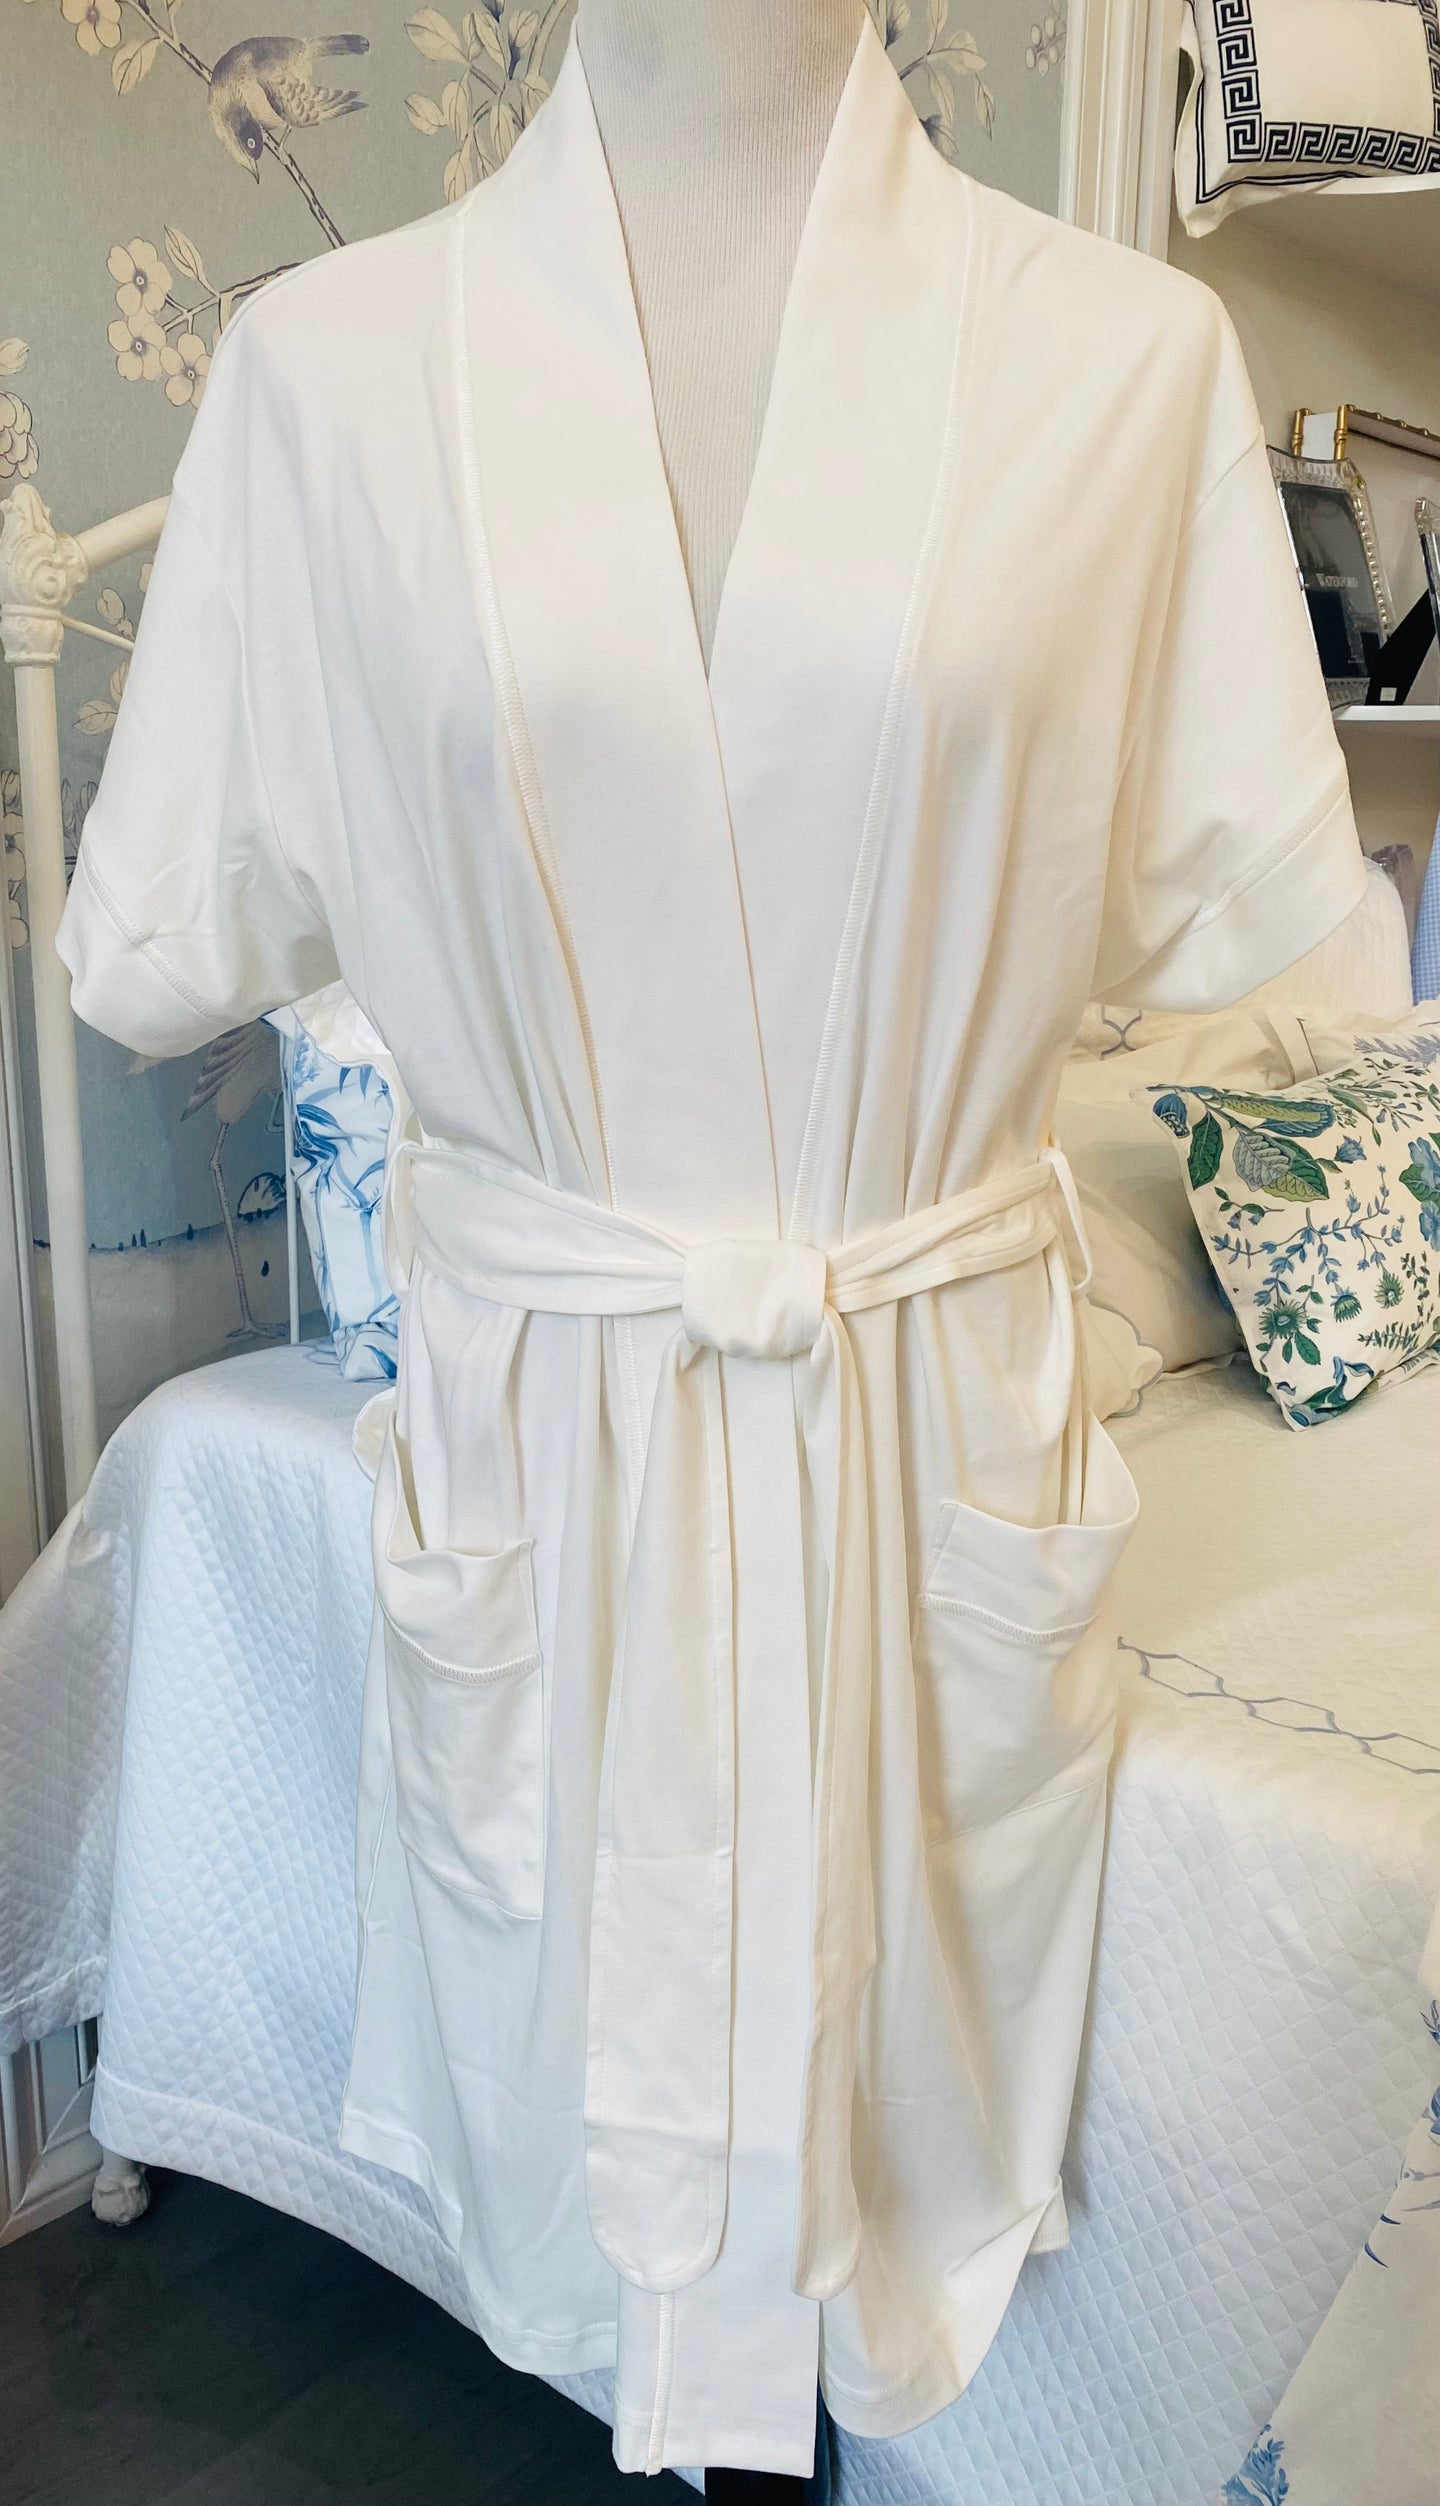 Butterknit Short Sleeve Short Robe - White